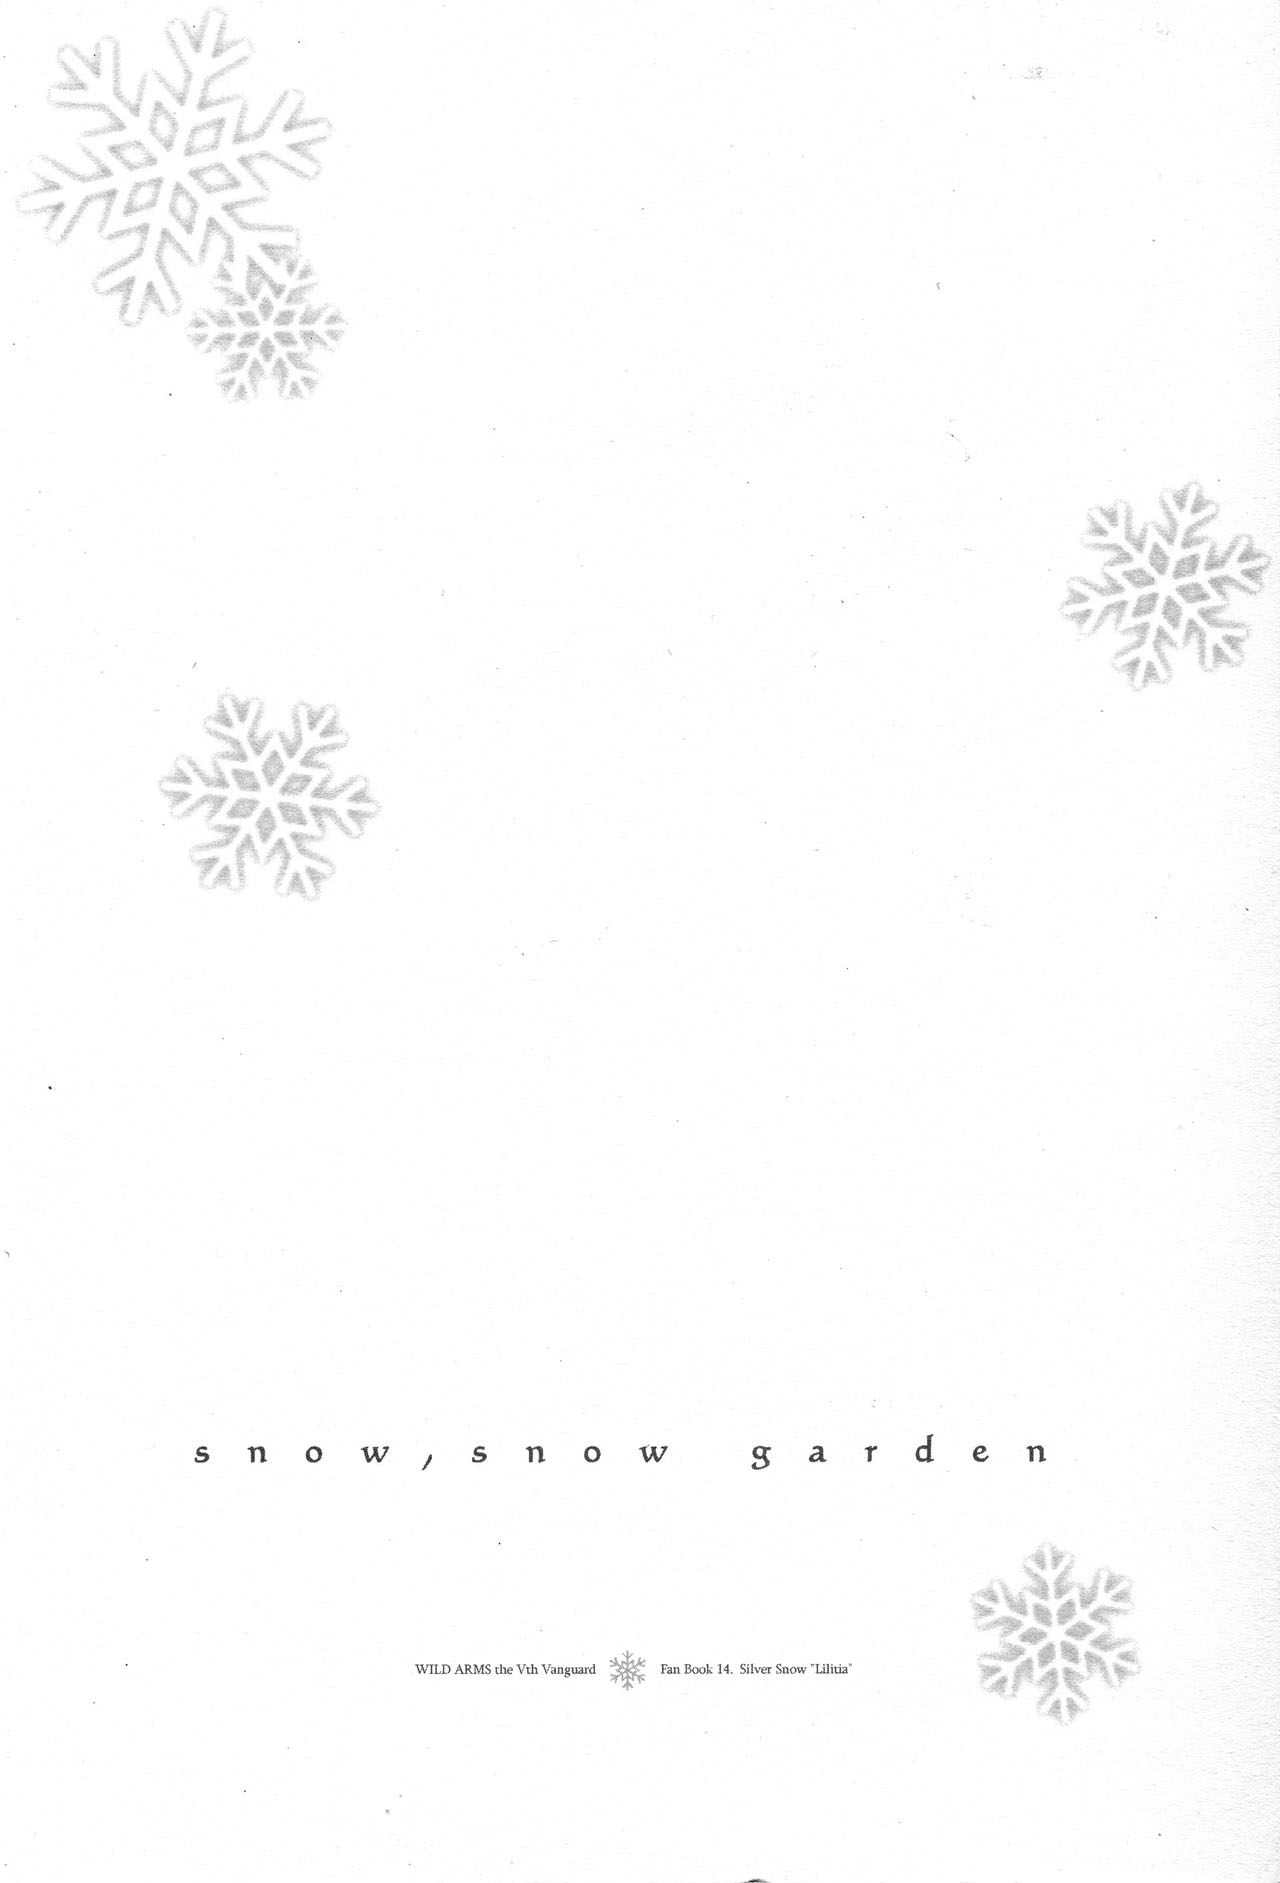 (C79) [カイチョーマニアックス (ナナミヤスナ)] snow,snow garden (ワイルドアームズ5)